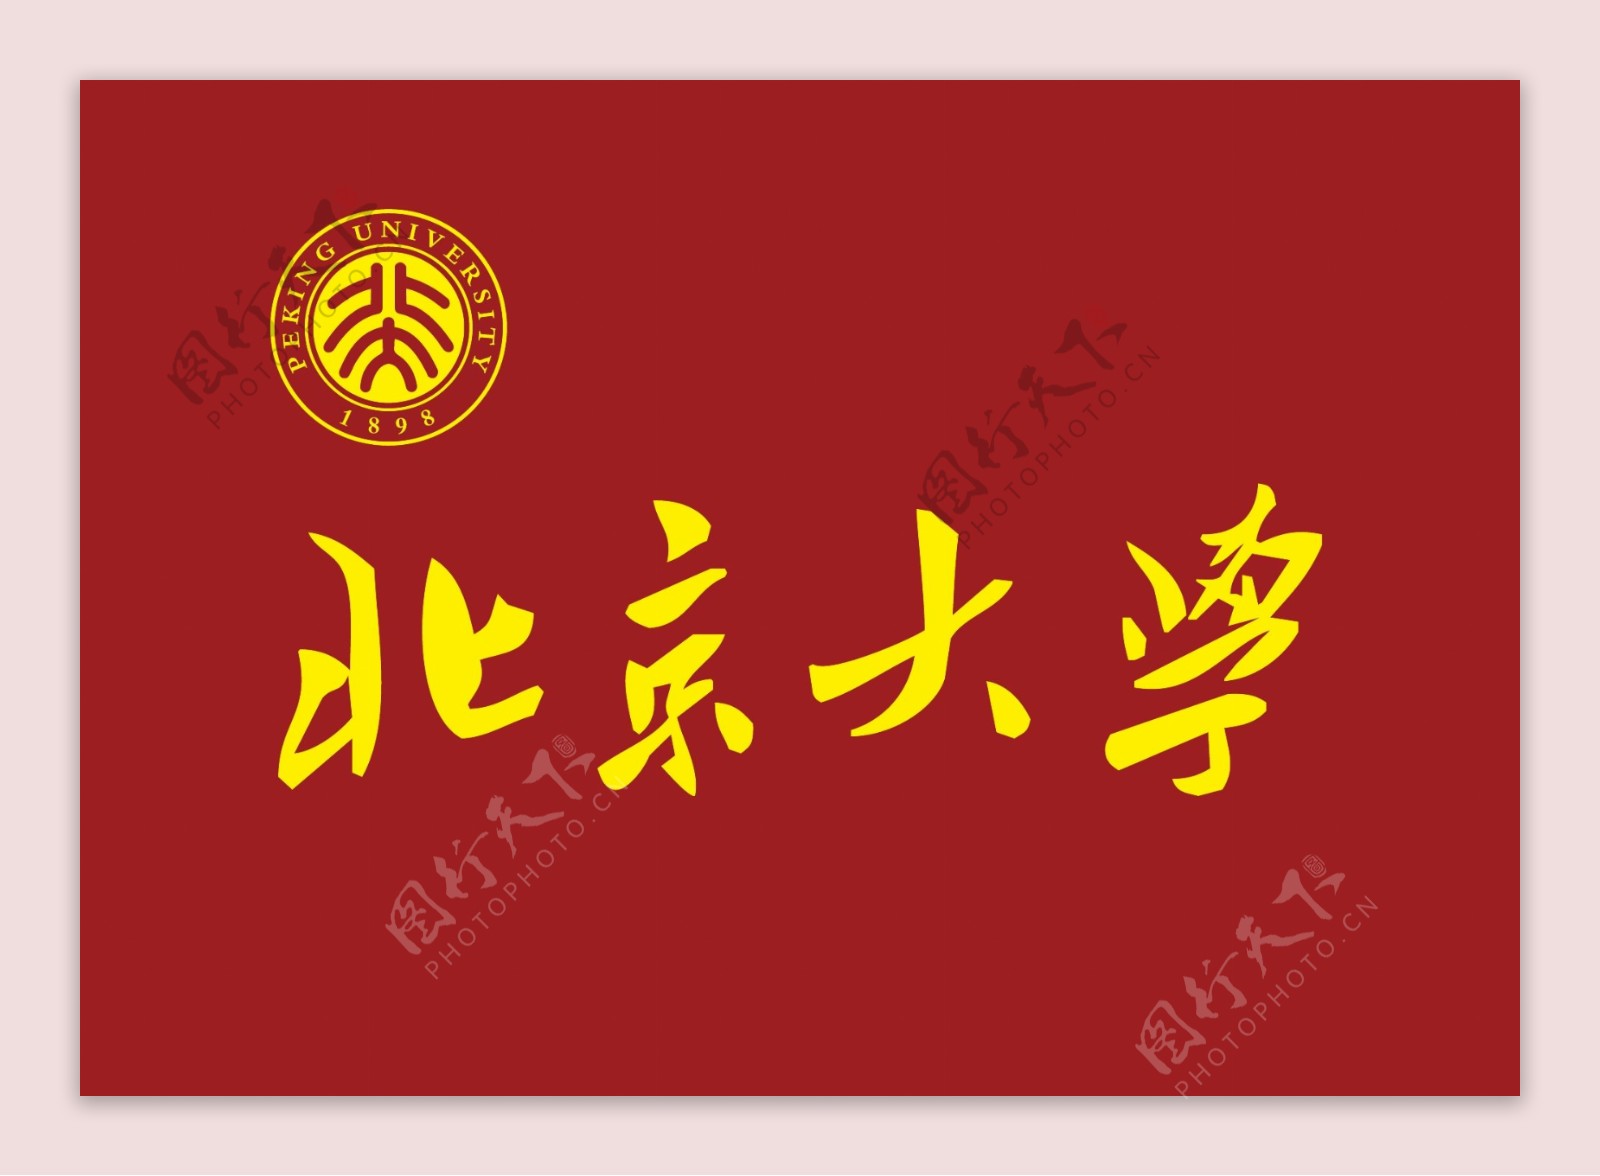 中国大学生体育协会logo